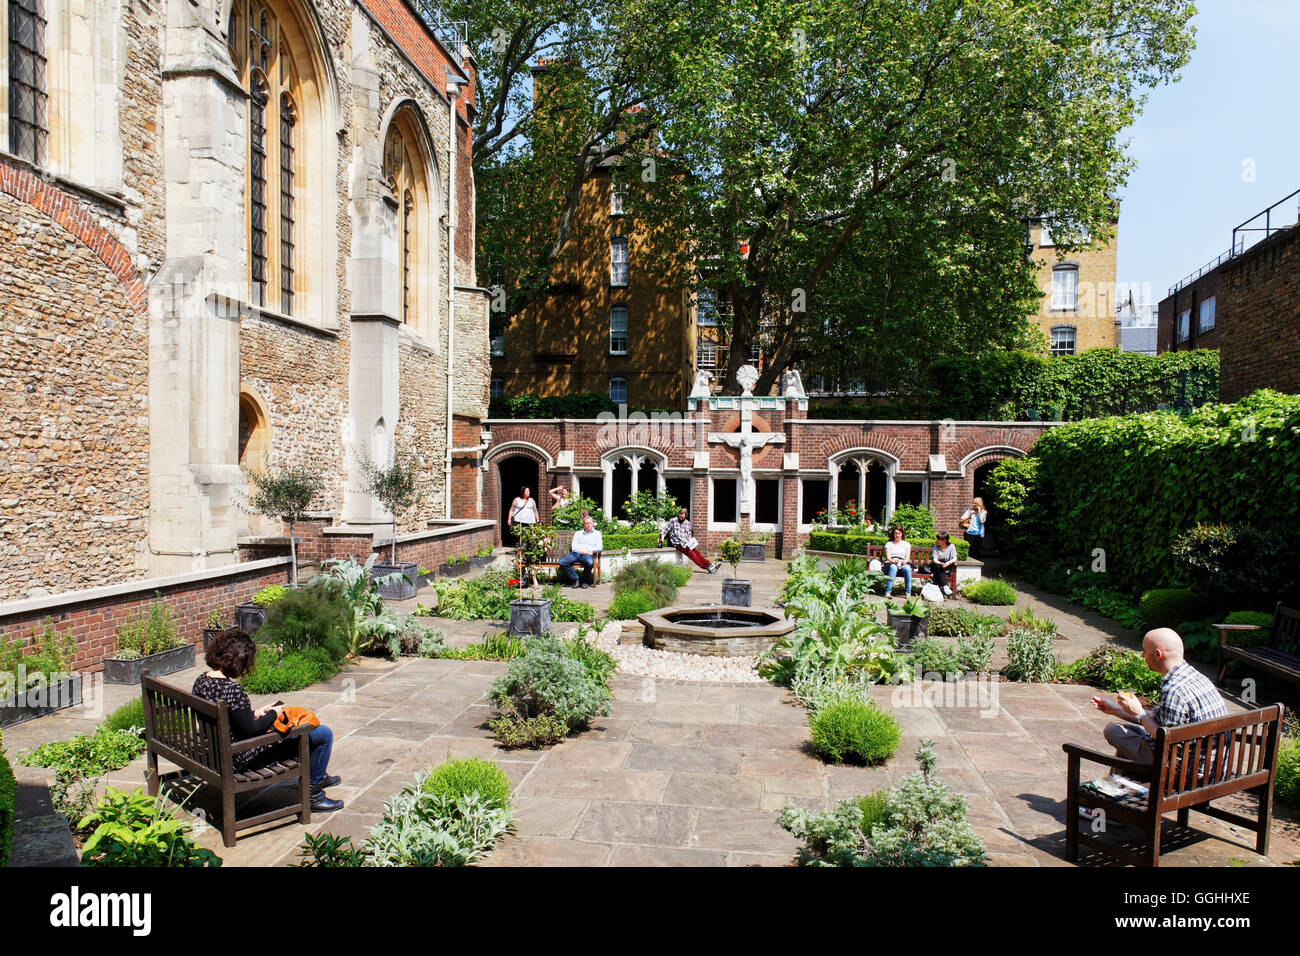 Mittagspause im Garten der Kirche St. Johannes, St. Johns Square, Clerkenwell, London, England, Vereinigtes Königreich Stockfoto